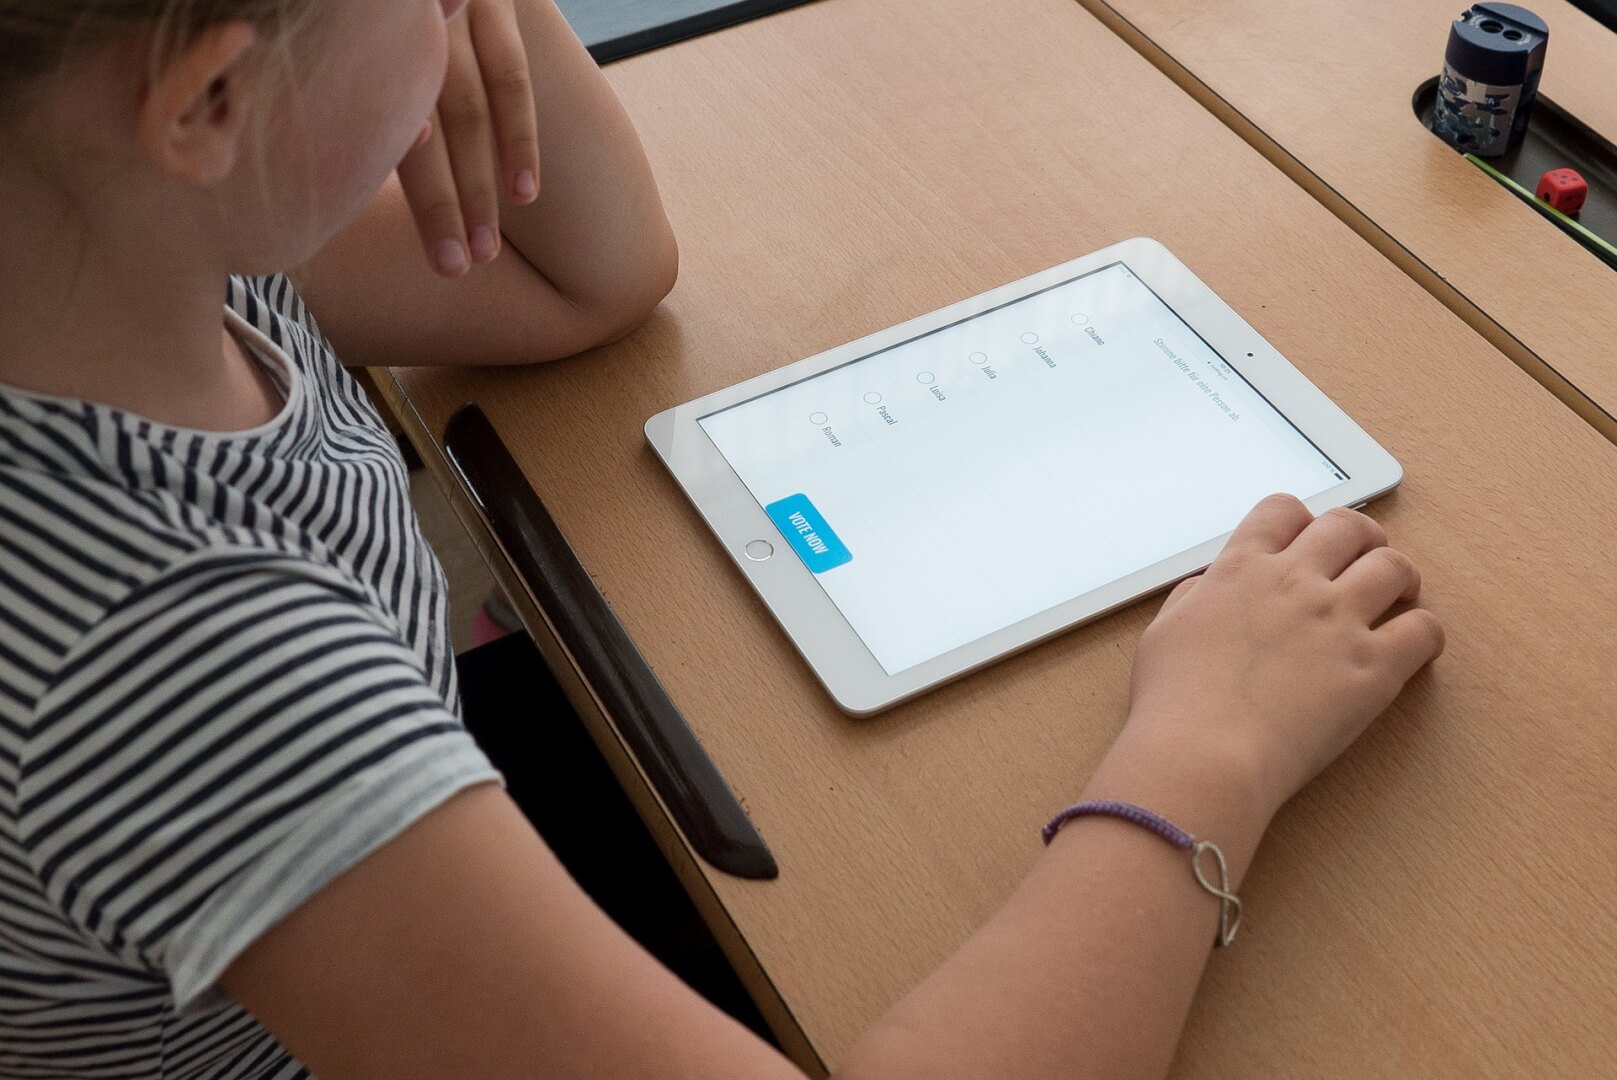 Αντιπαράθεση Για Τη Διανομή Tablet Σε Μαθητές Από Τον Δήμο Ηλιούπολης – Αντιδράσεις Από Γονείς